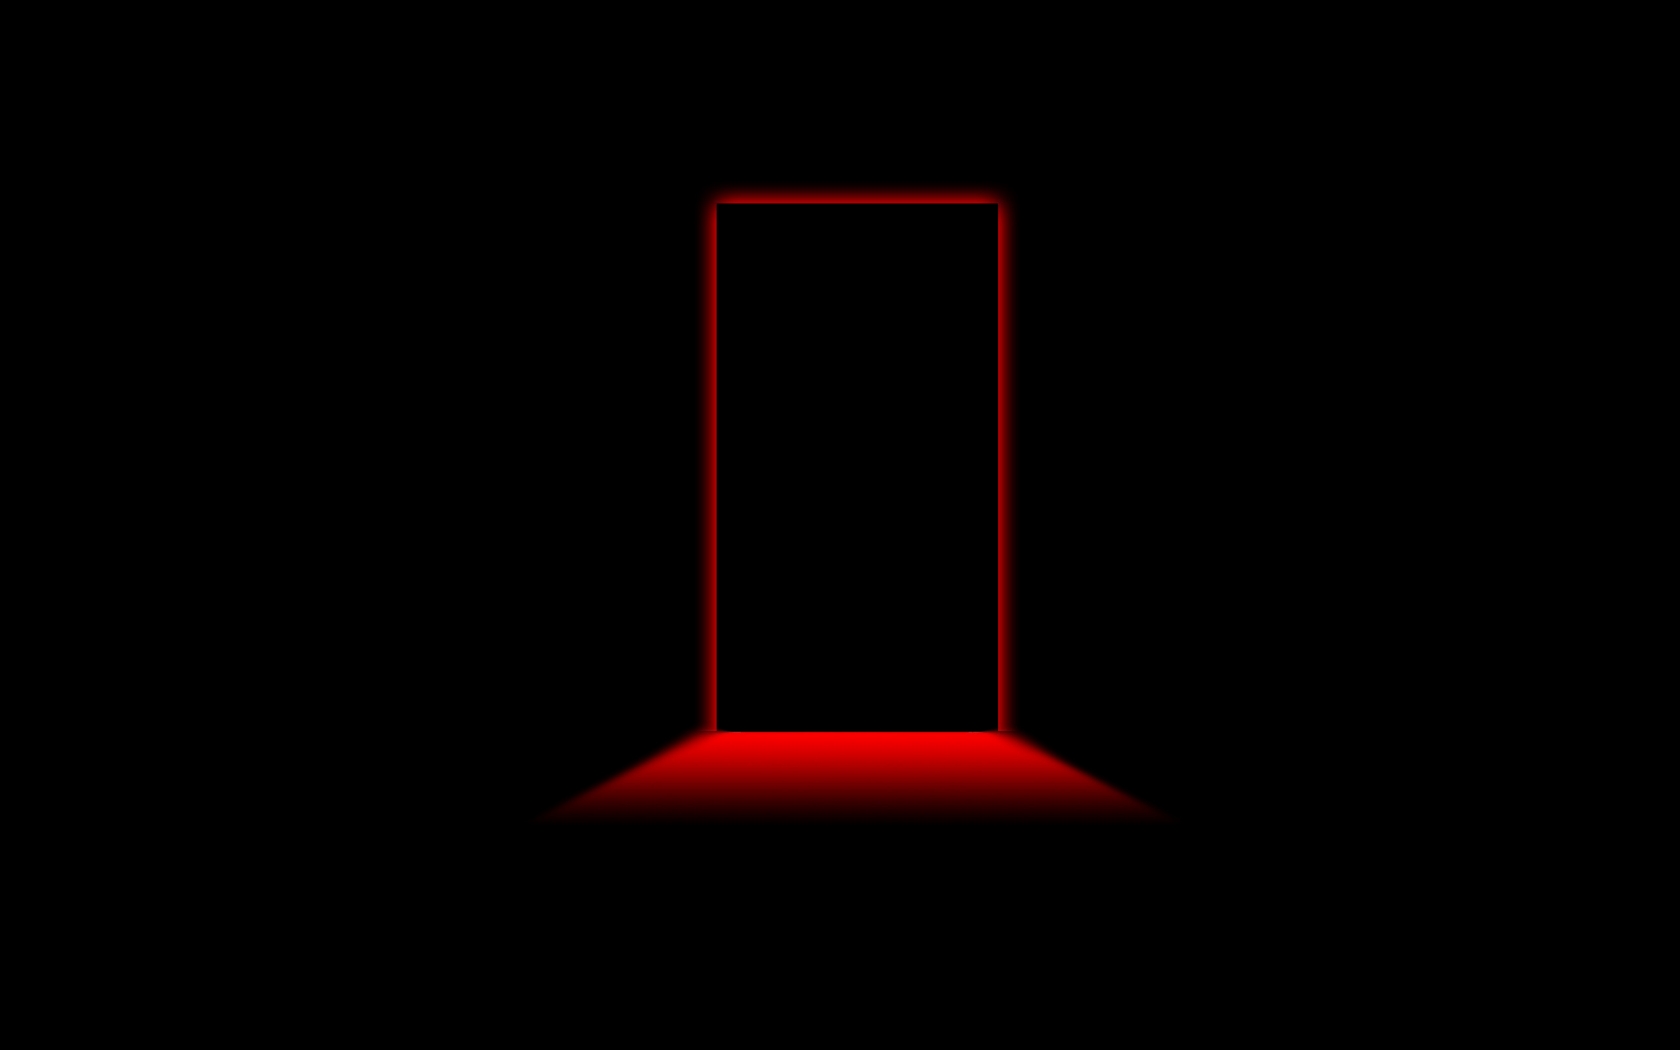 Door Red Light for 1680 x 1050 widescreen resolution